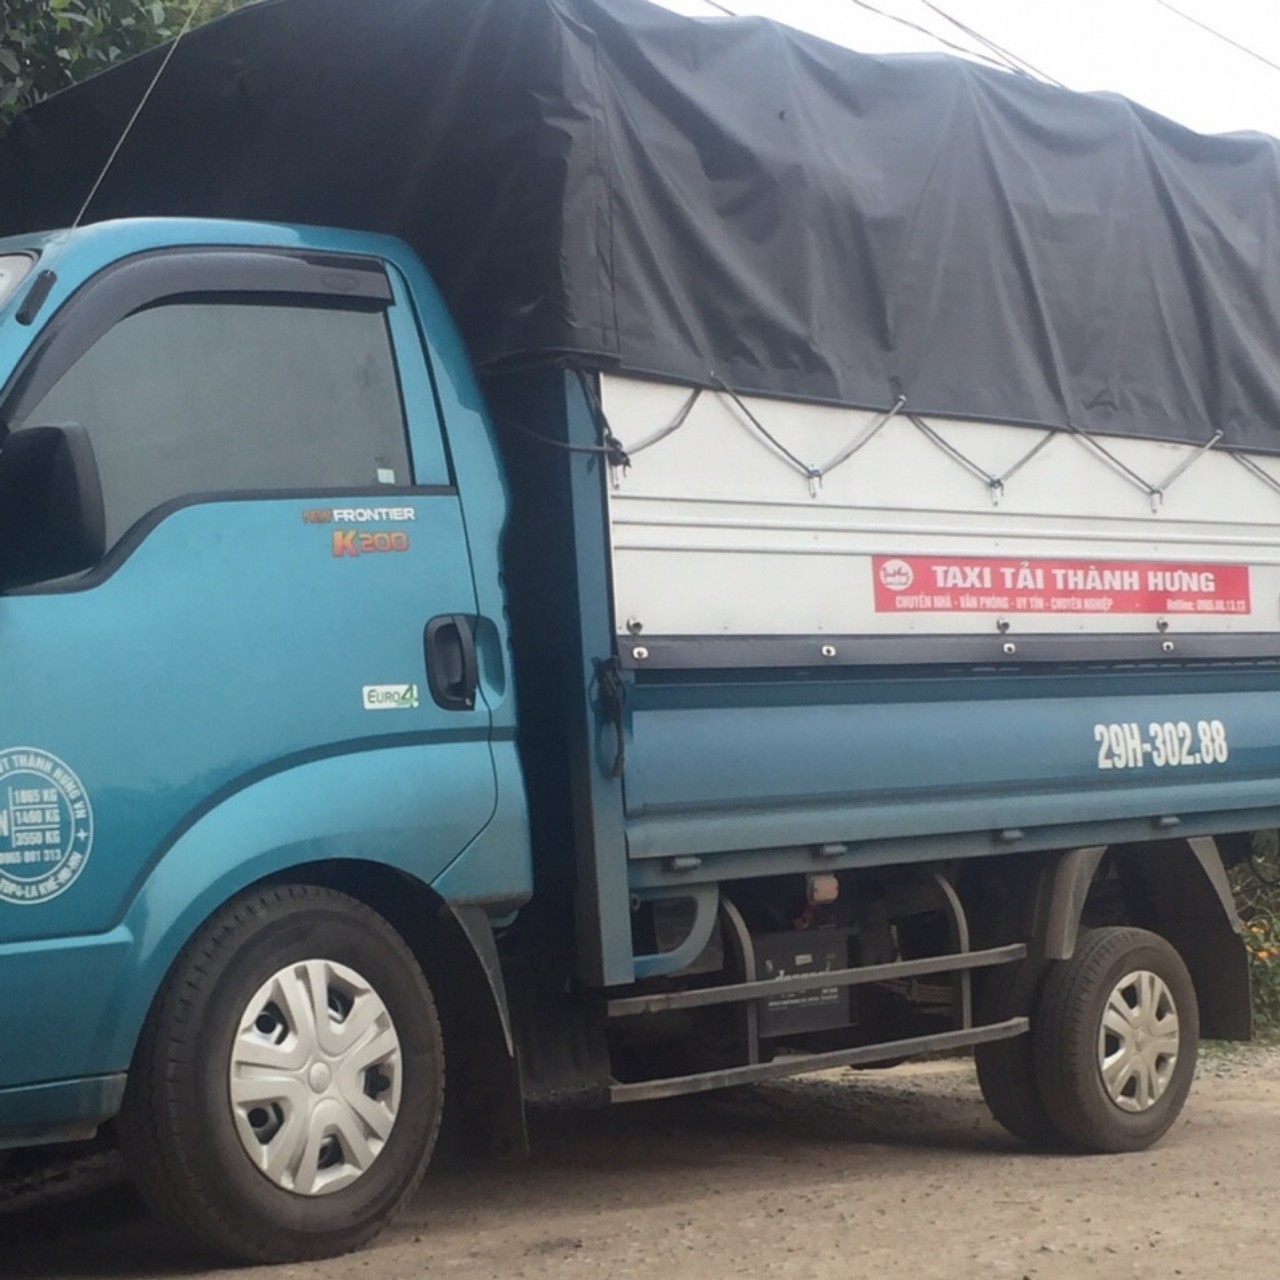 Taxi tải vận chuyển hàng hóa chất lượng của Thành Hưng